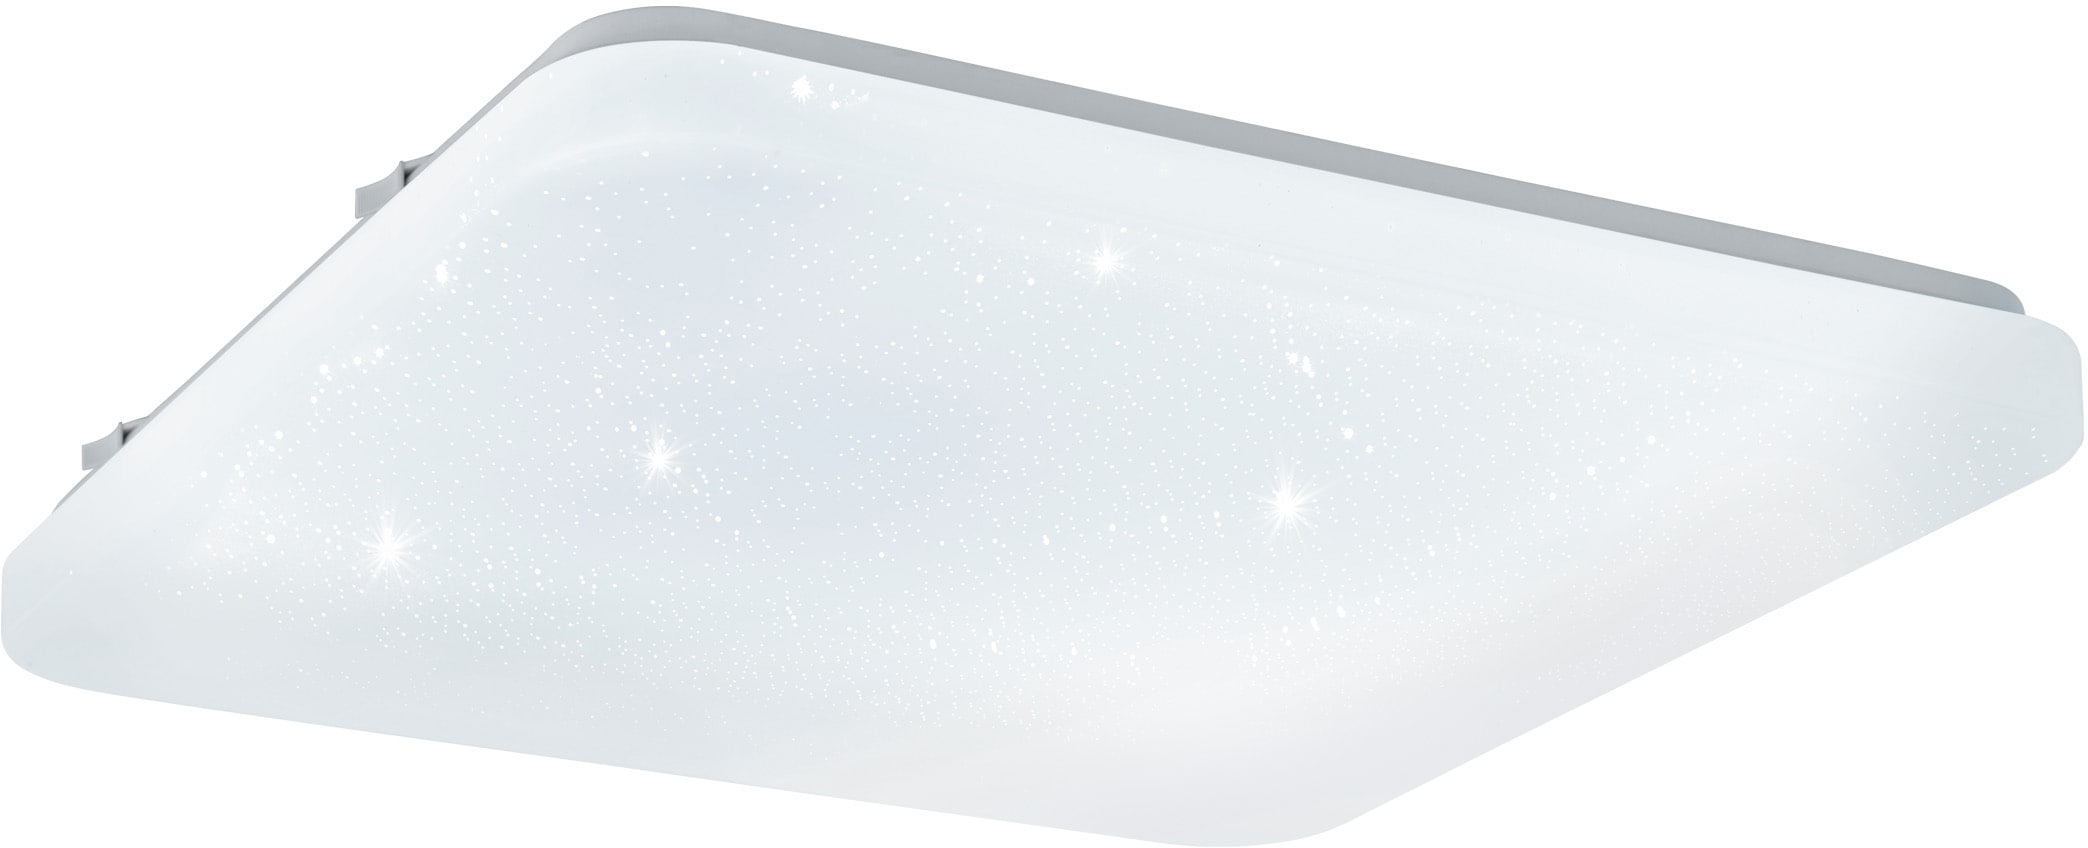 EGLO LED Deckenleuchte »FRANIA-S«, LED-Board, Warmweiß, weiß / L33 x H7 x  B33 cm / inkl. 1 x LED-Platine (je 14,6W, 1600lm, 3000K) / Deckenlampe -  Sternenhimmel - warmweißes Licht - Schlafzimmerlampe -